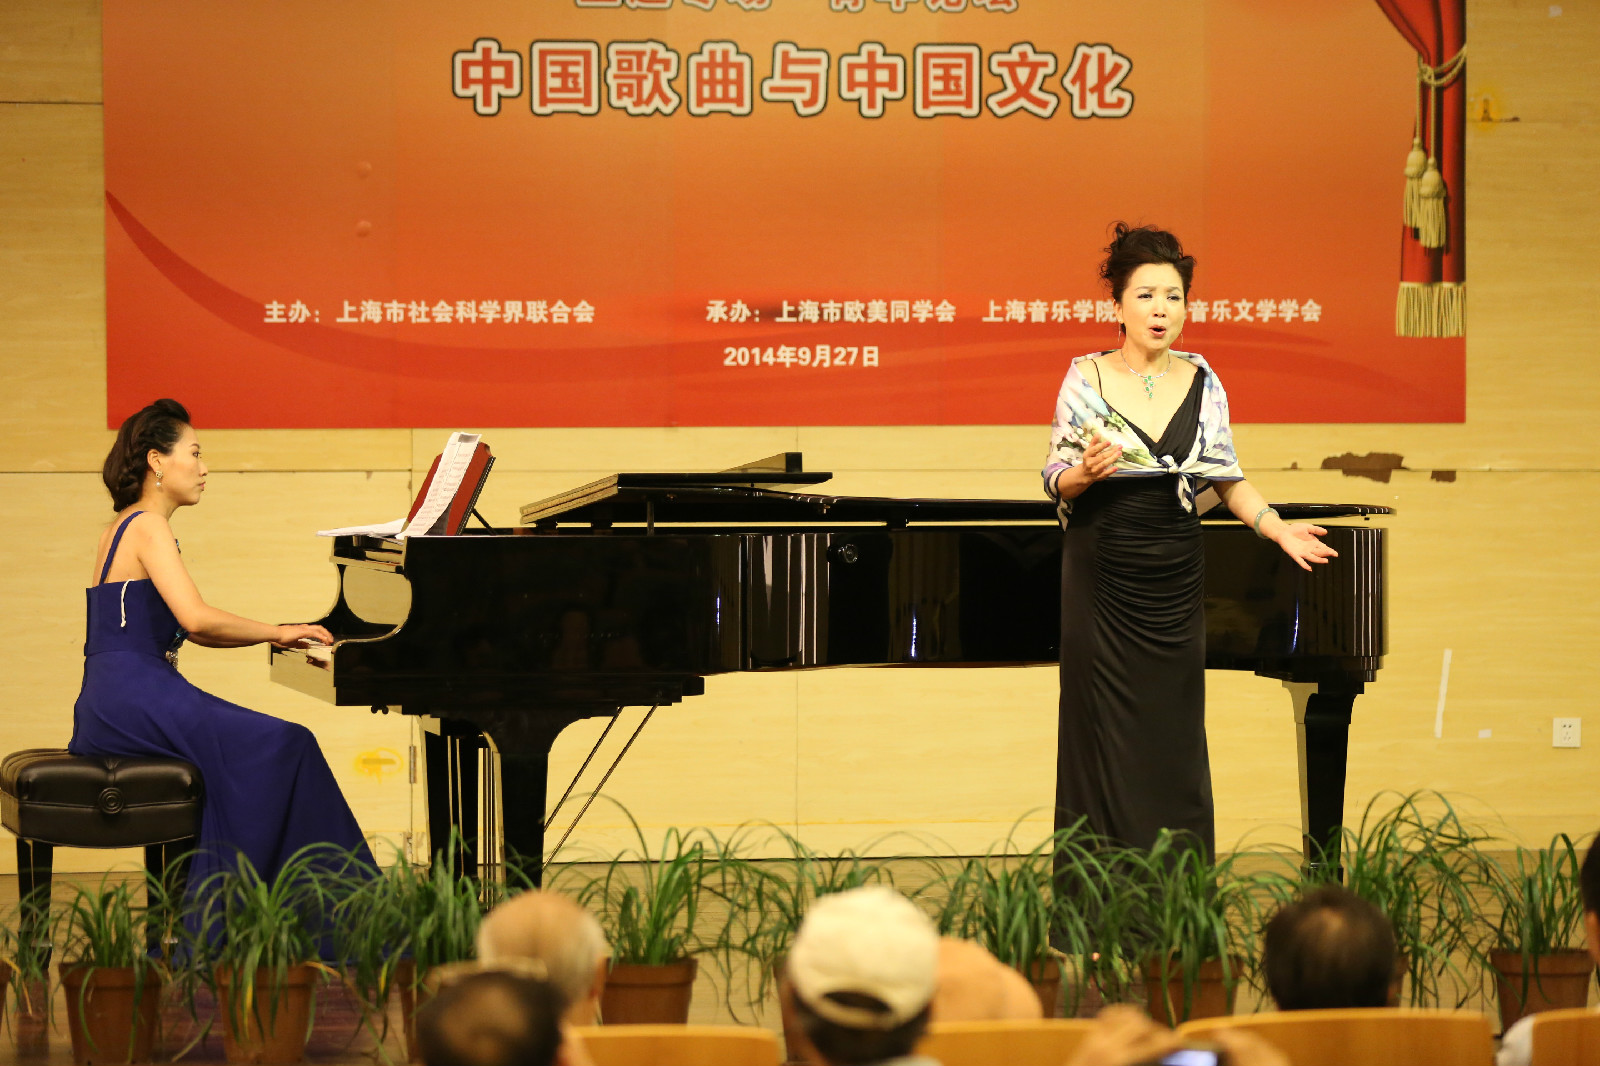 楊霖希 楊學進 上海老歌研討會演出